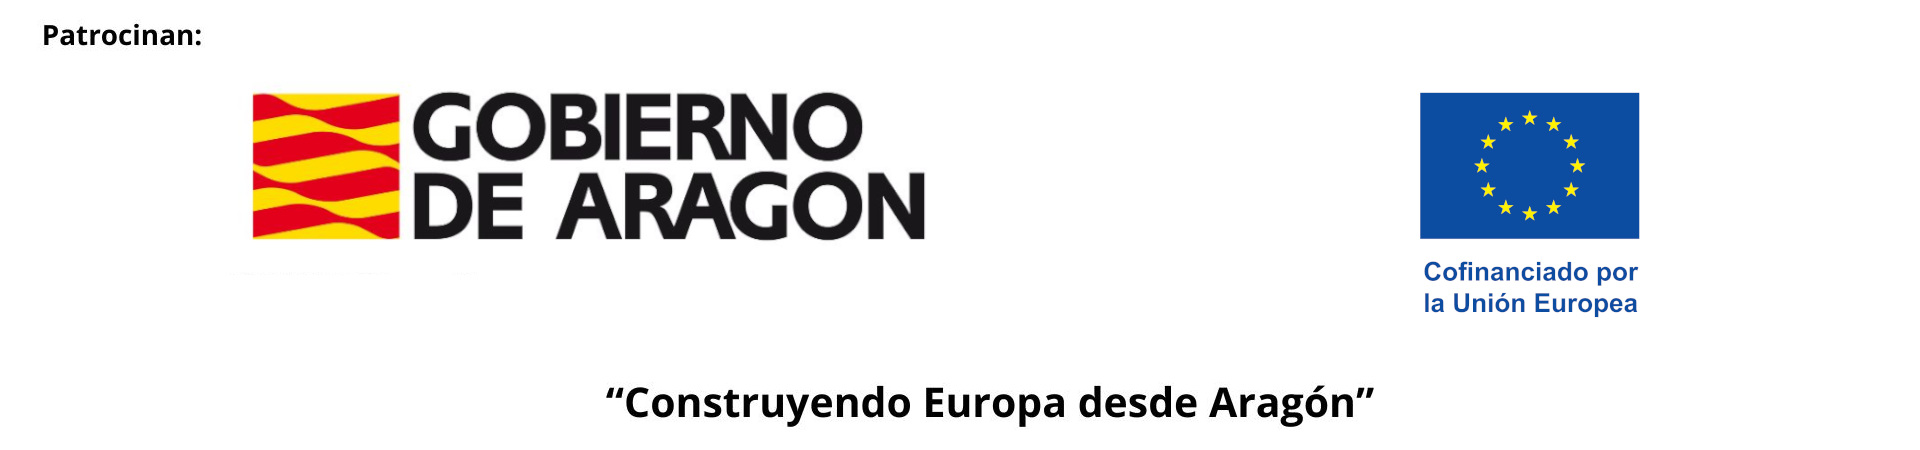 Logos-UE-y-Gob-Aragon-Construyendo-Europa-desde-Aragon_2.jpg